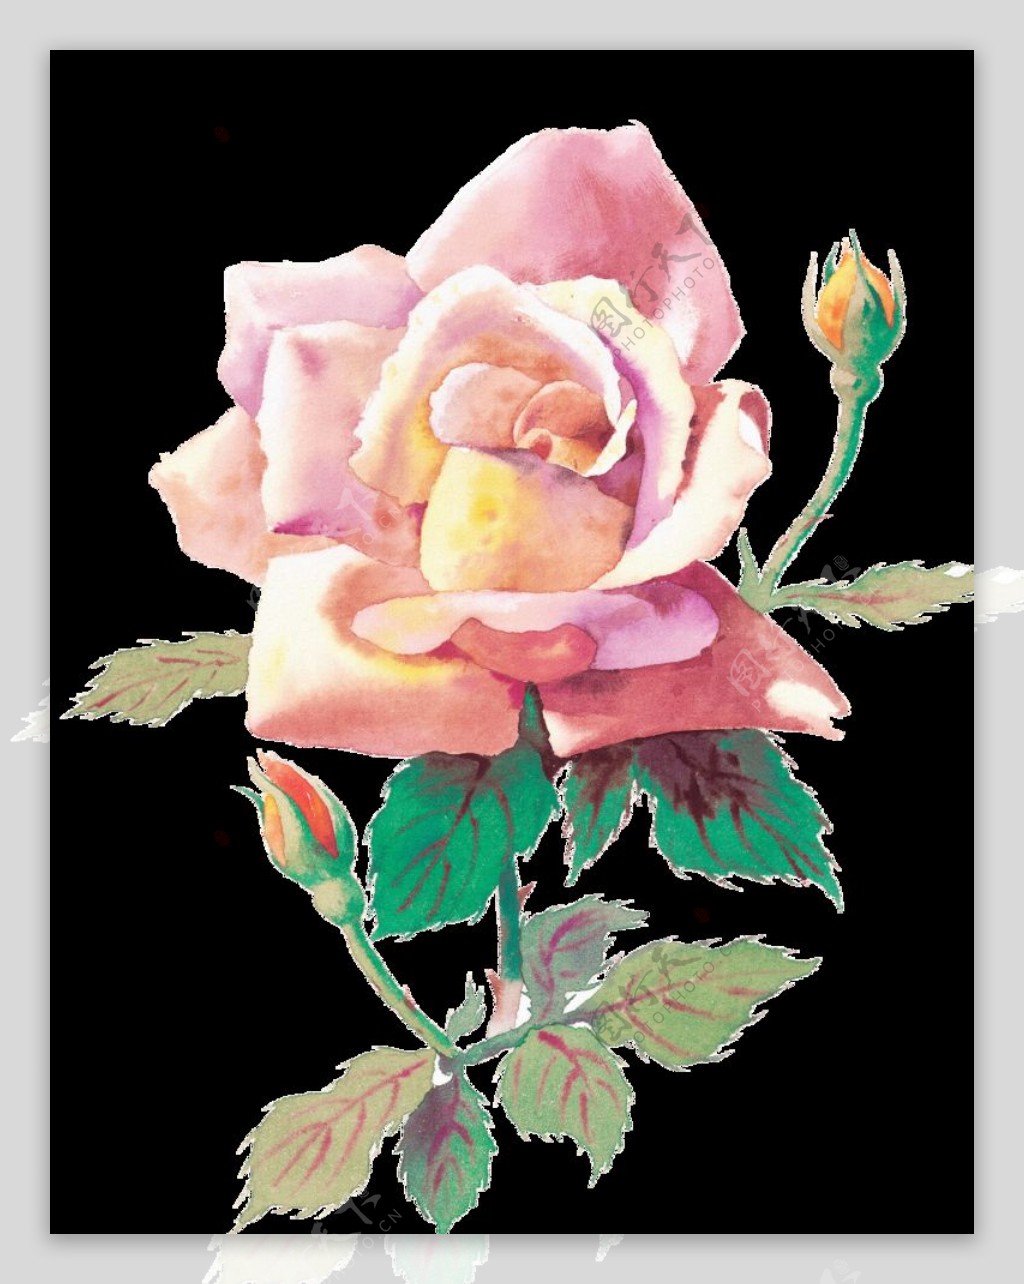 粉色玫瑰花图片 粉色玫瑰壁纸图片 | 犀牛图片网